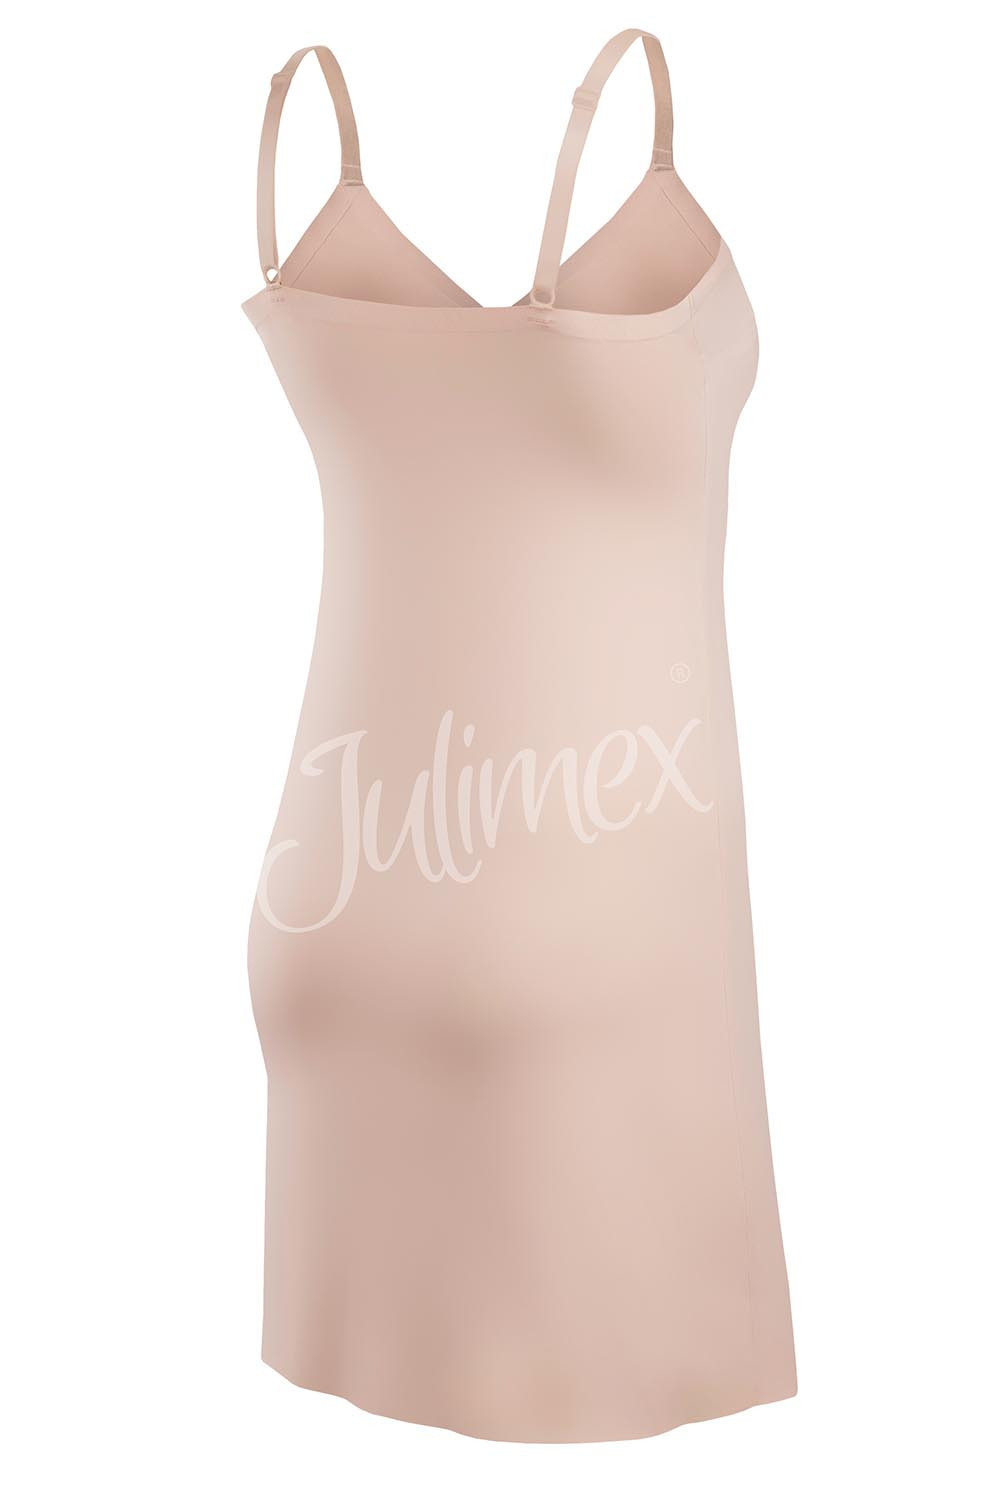 Julimex Halka Soft & Smooth kolor:natural 2XL